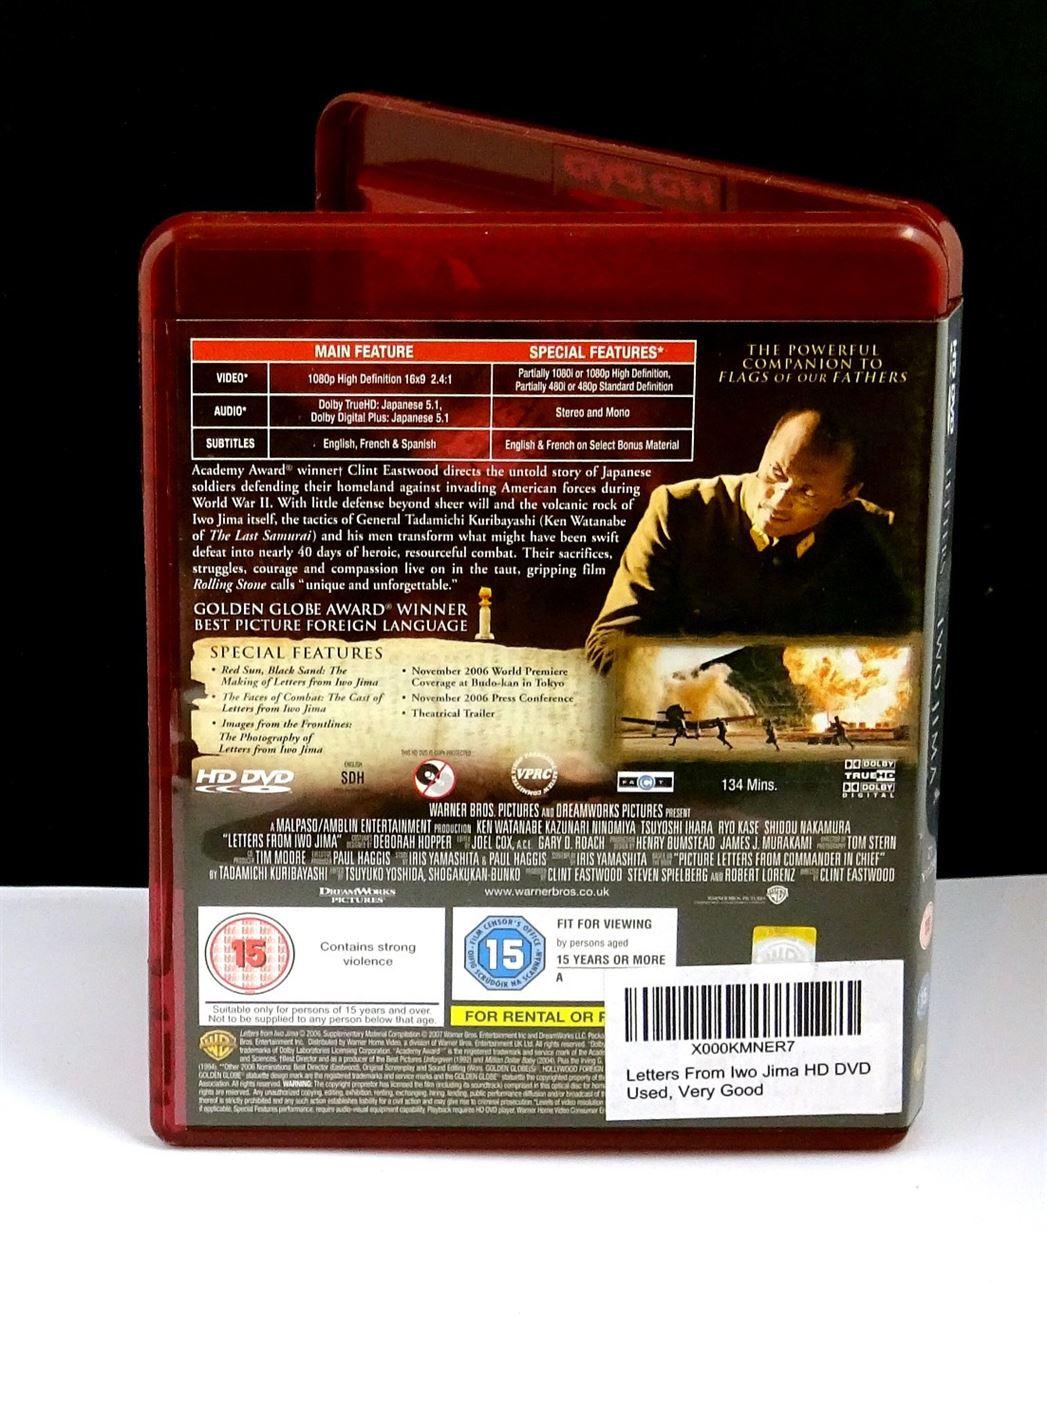 Letters From Iwo Jima (HD DVD) - UK Seller